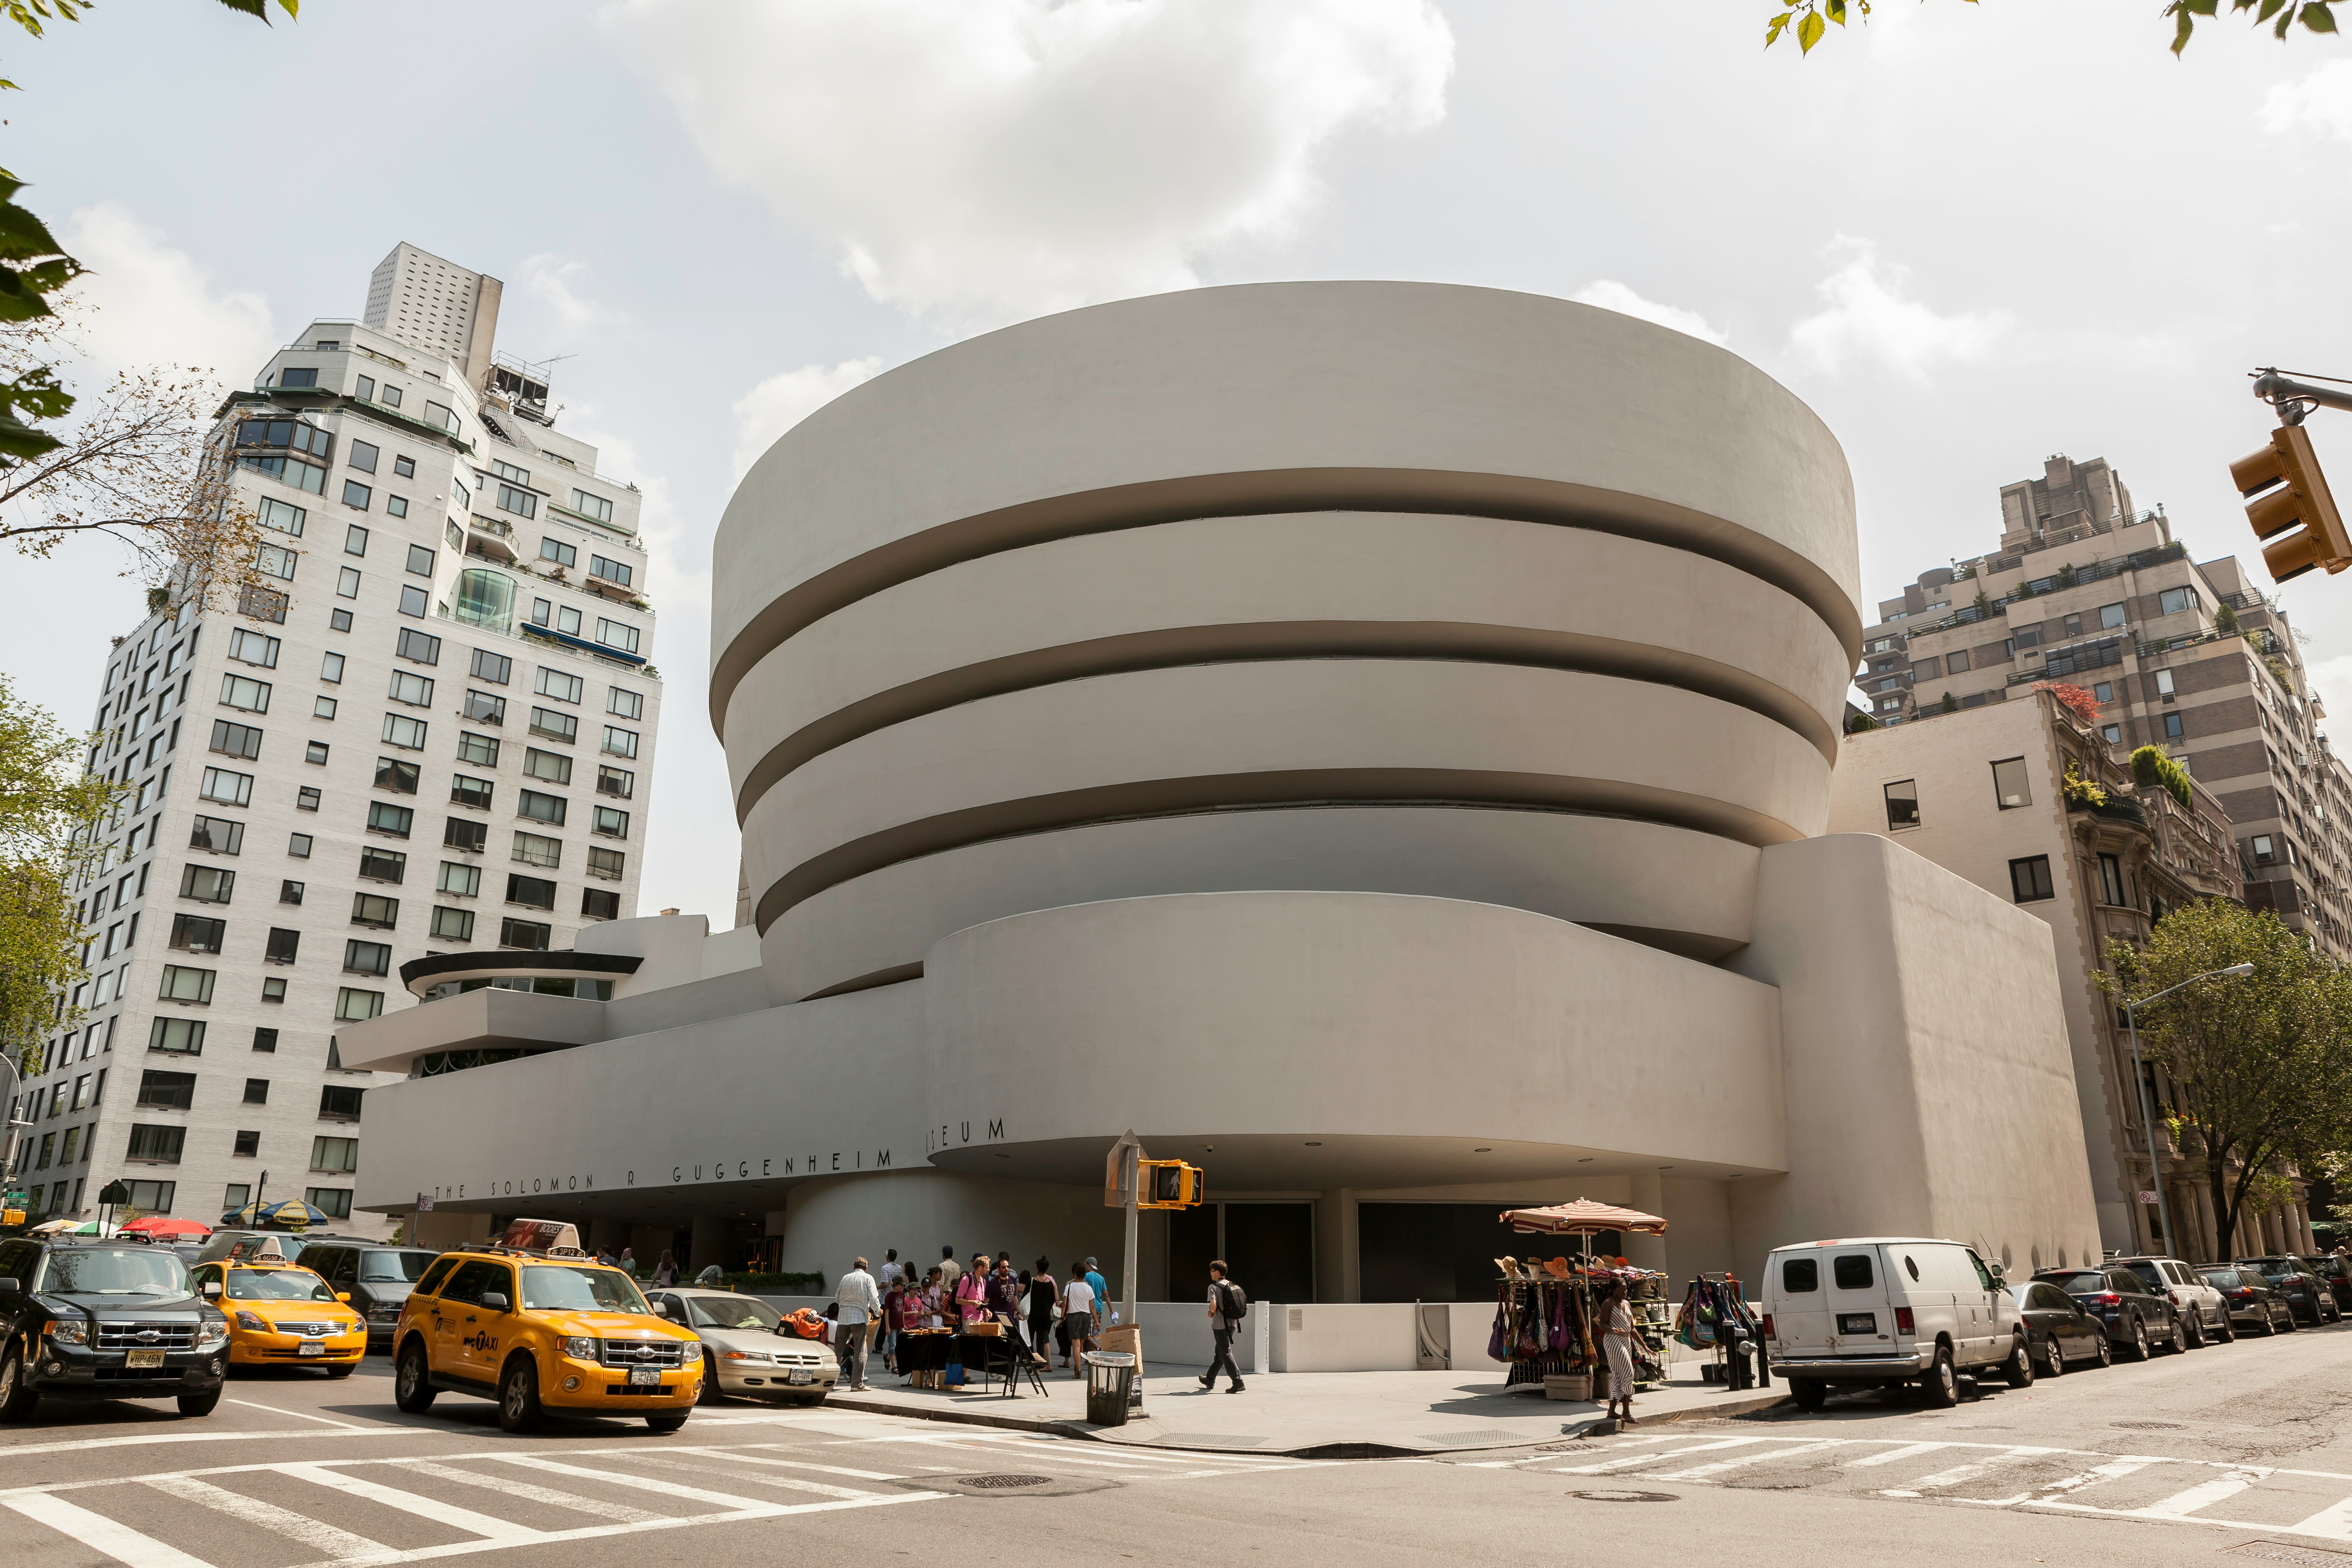 The Guggenheim Museum in New York City.